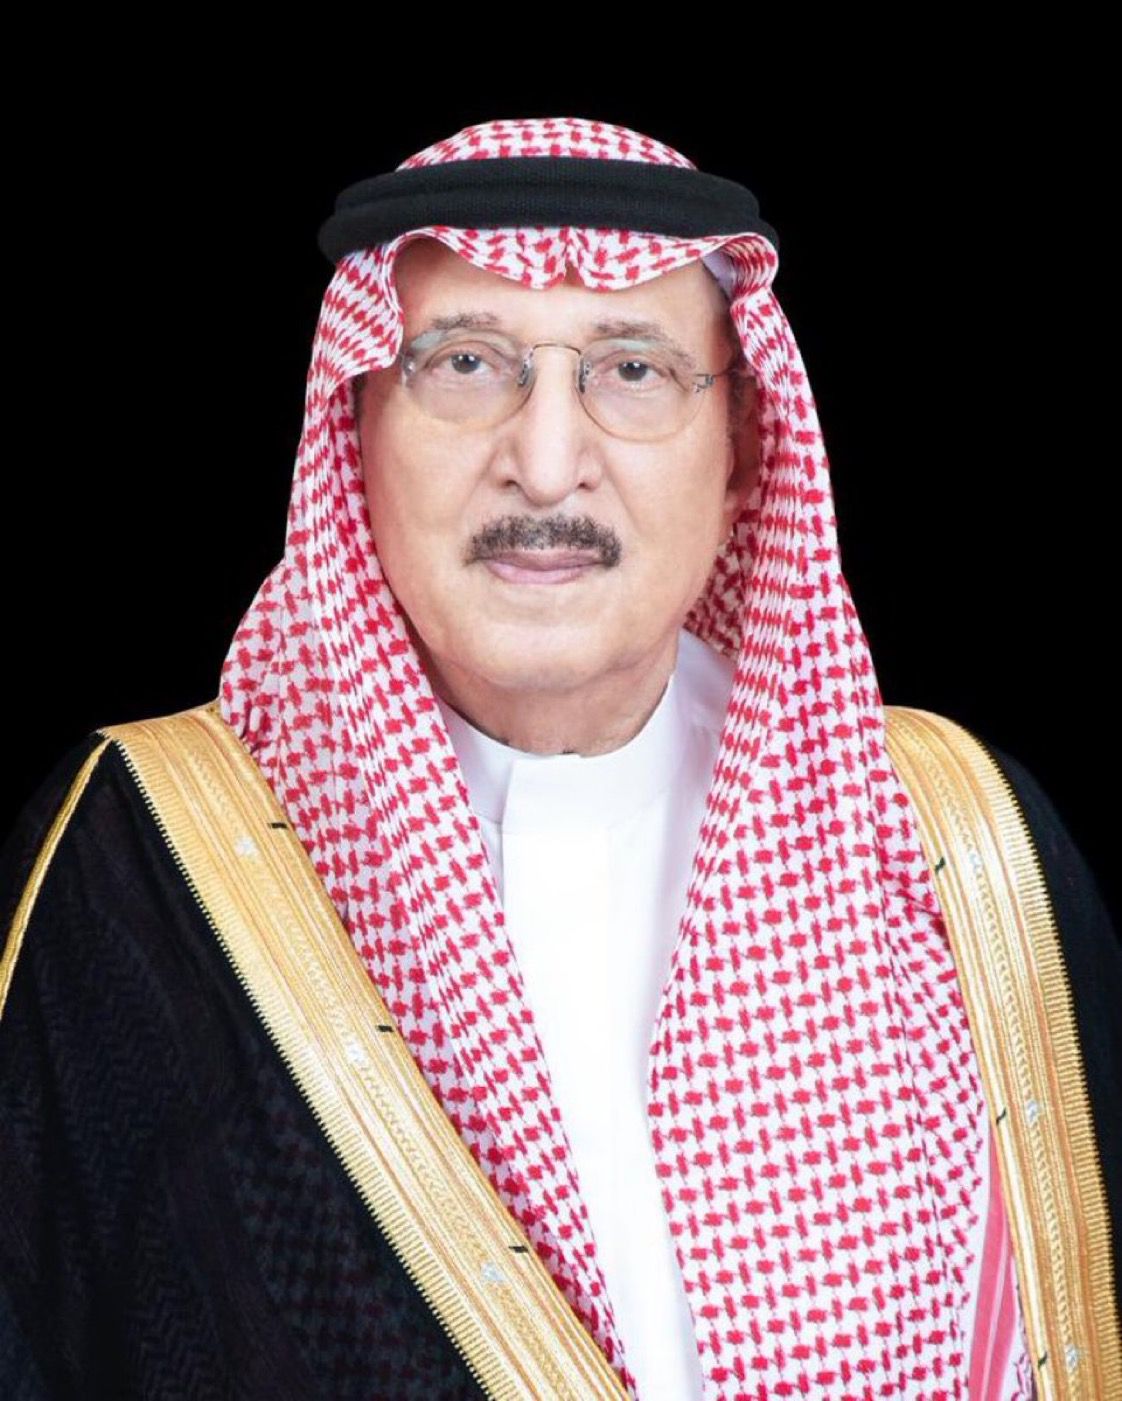 ‏ تبرعاً سخي من الرئيس الفخري للجنة تراحم جازان الأمير محمد بن ناصر ال سعود